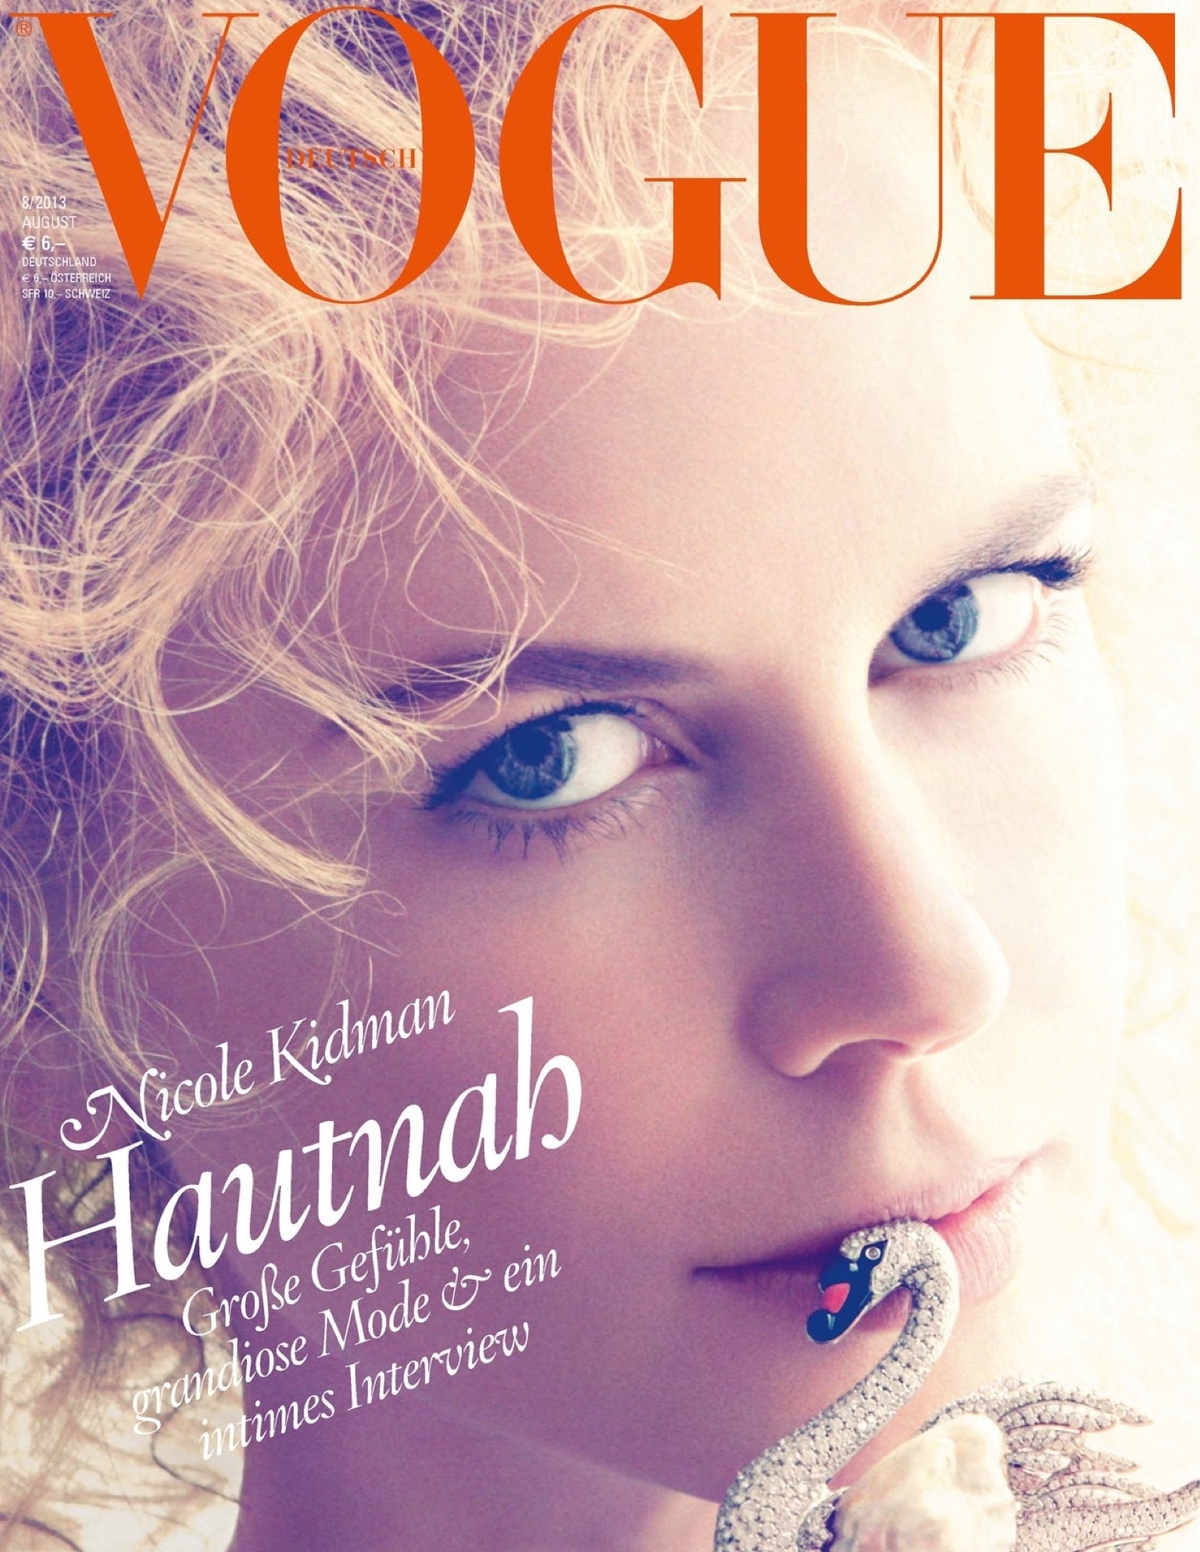 Николь Кидман в журнале Vogue Германия. Август 2013